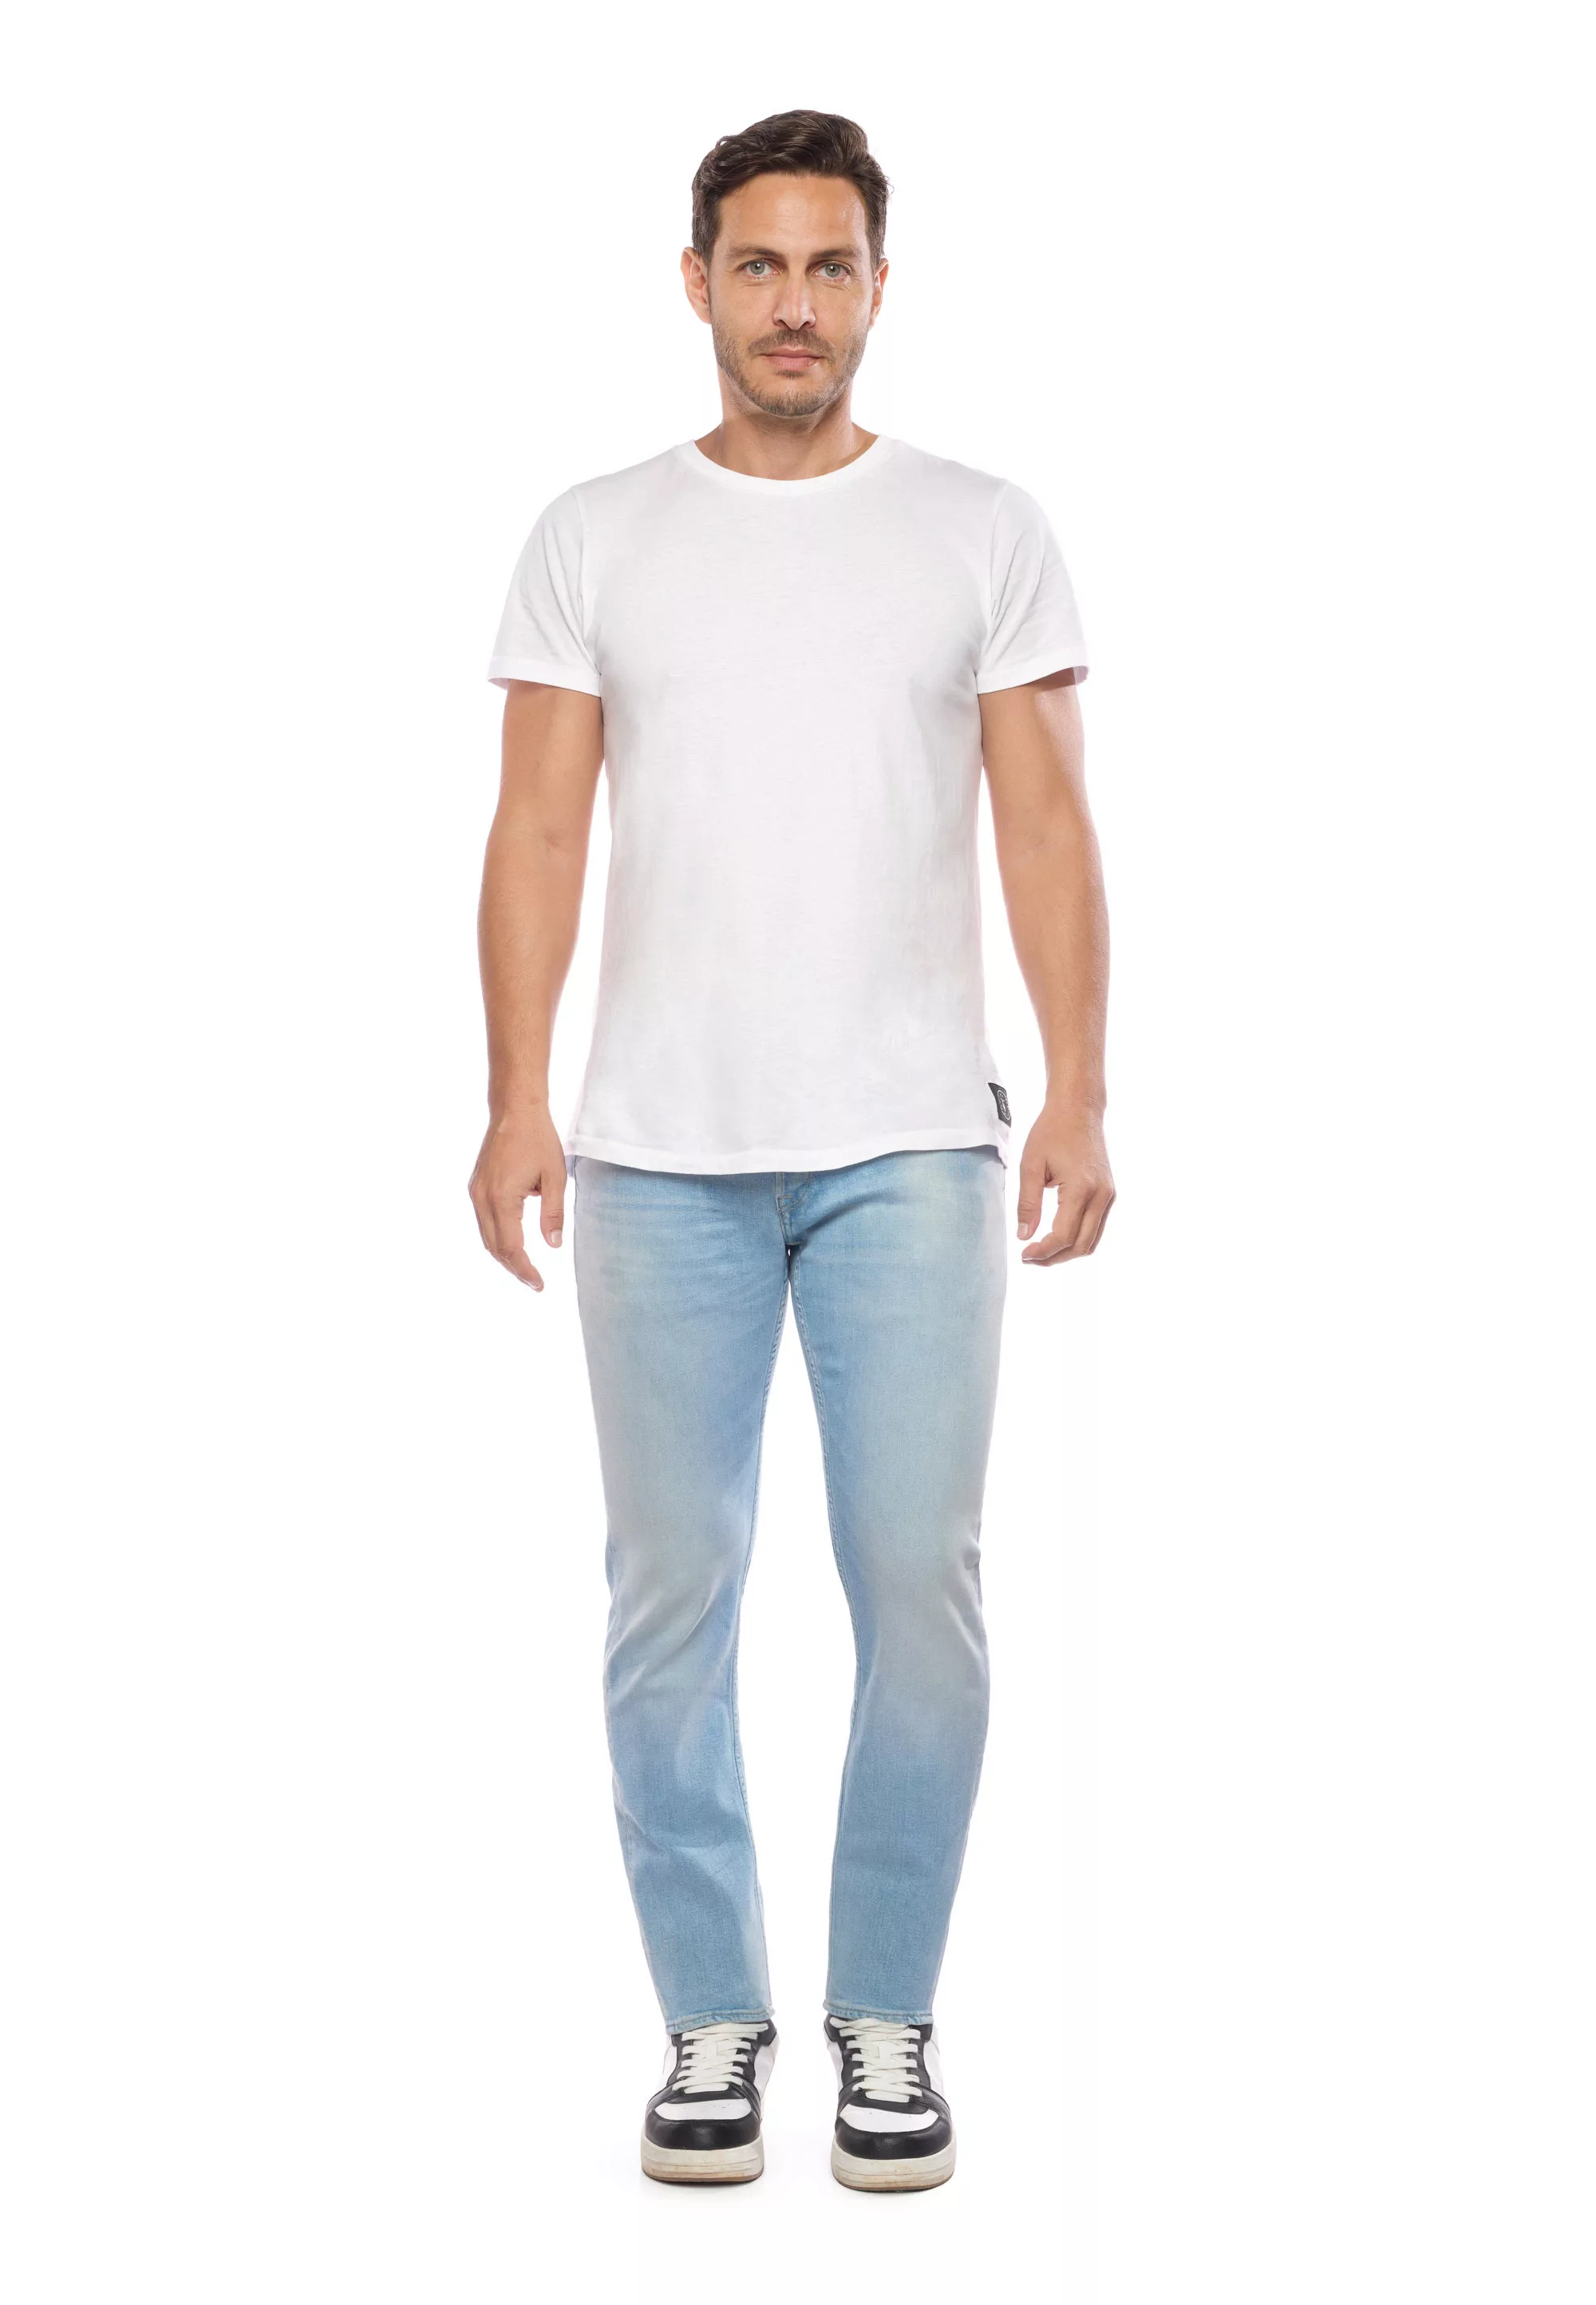 Le Temps Des Cerises Bequeme Jeans günstig online kaufen